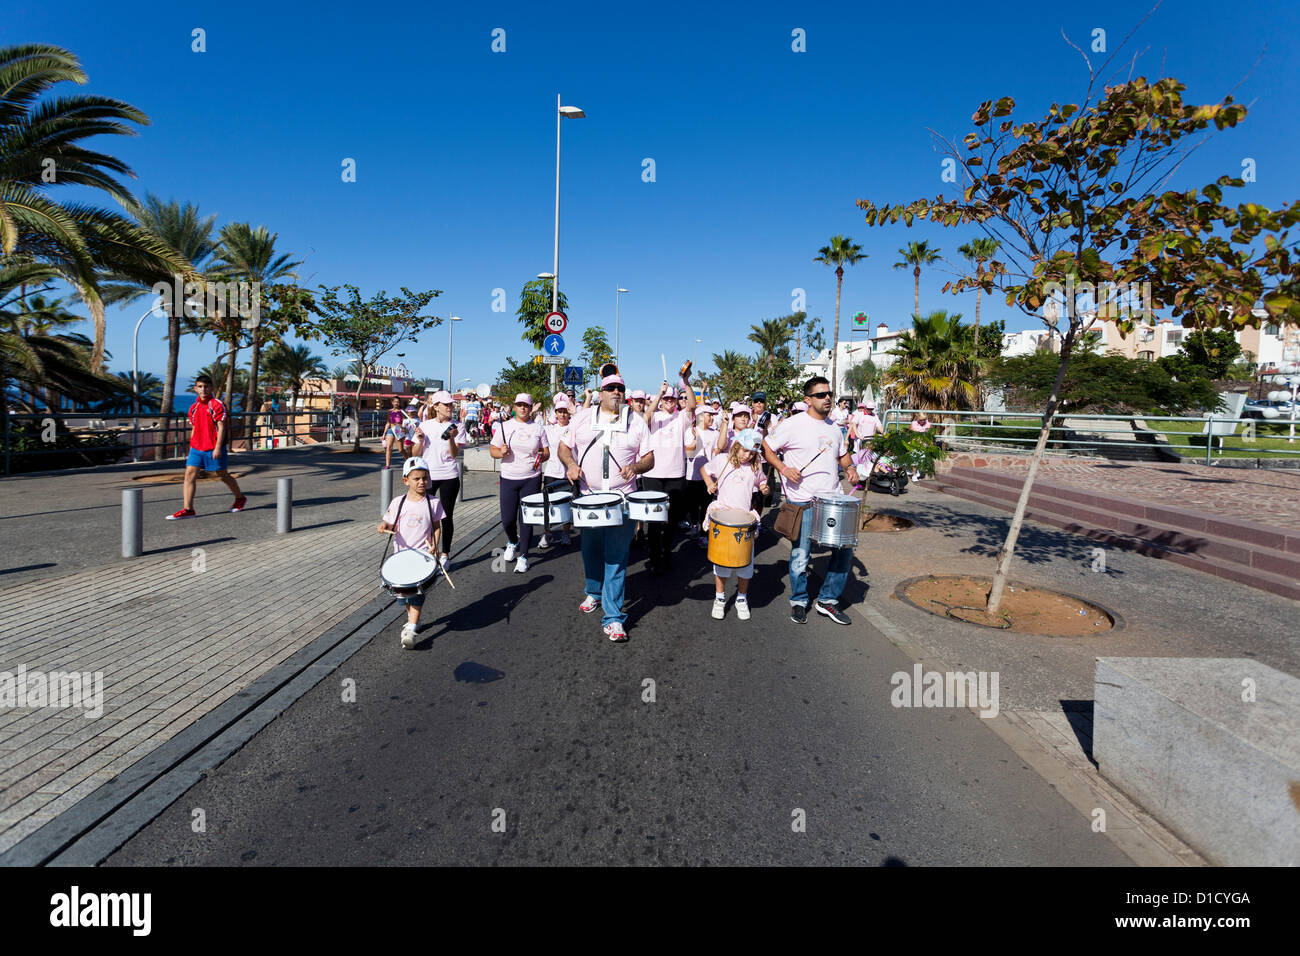 Über 2300 Menschen hob mehr als 16.000 Euro für wohltätige Zwecke arbeiten, um Brustkrebs zu bekämpfen, zu Fuß von der Magma-Zentrum in Las Americas, Los Cristianos, Teneriffa, Kanarische Inseln, Spanien. 16.12.2012. Stockfoto